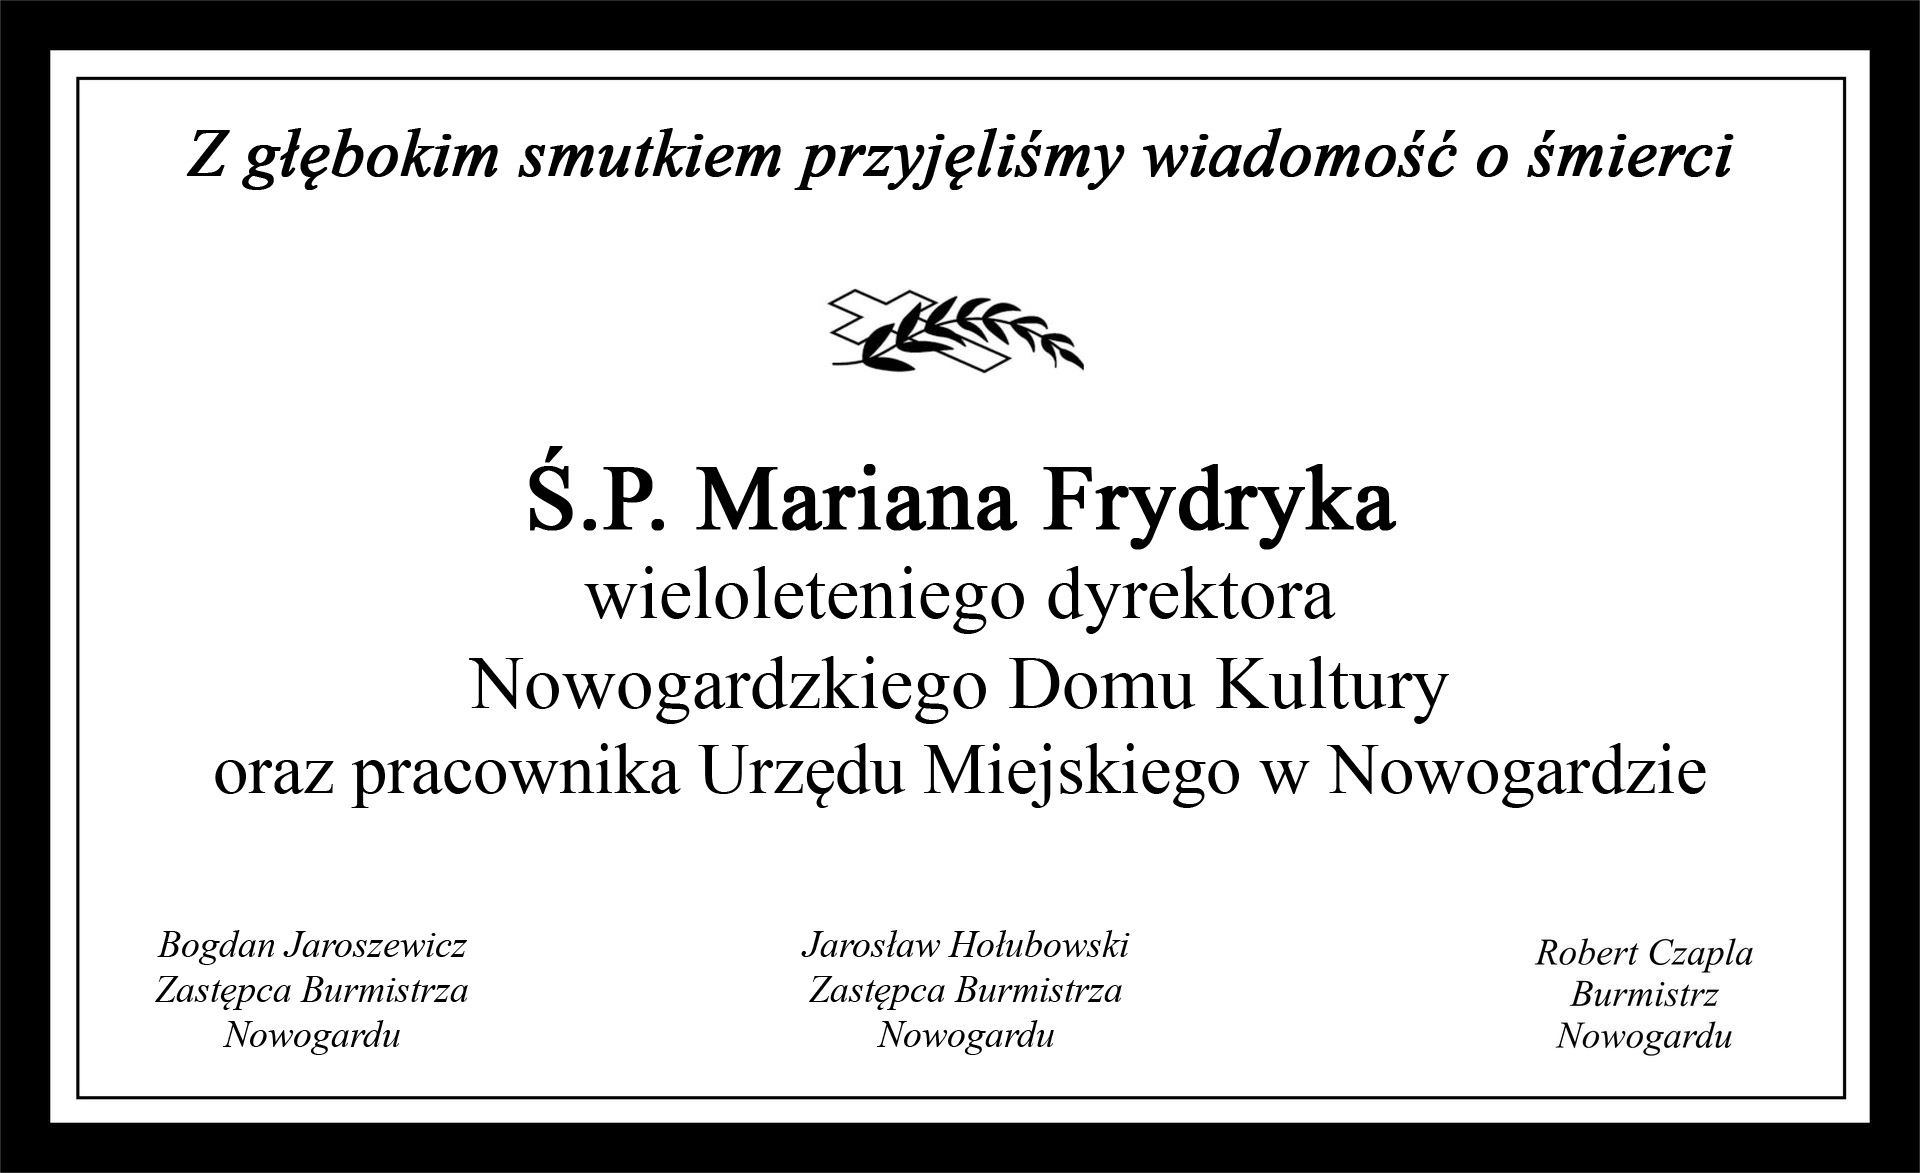 Ś.P. Marian Frydryk